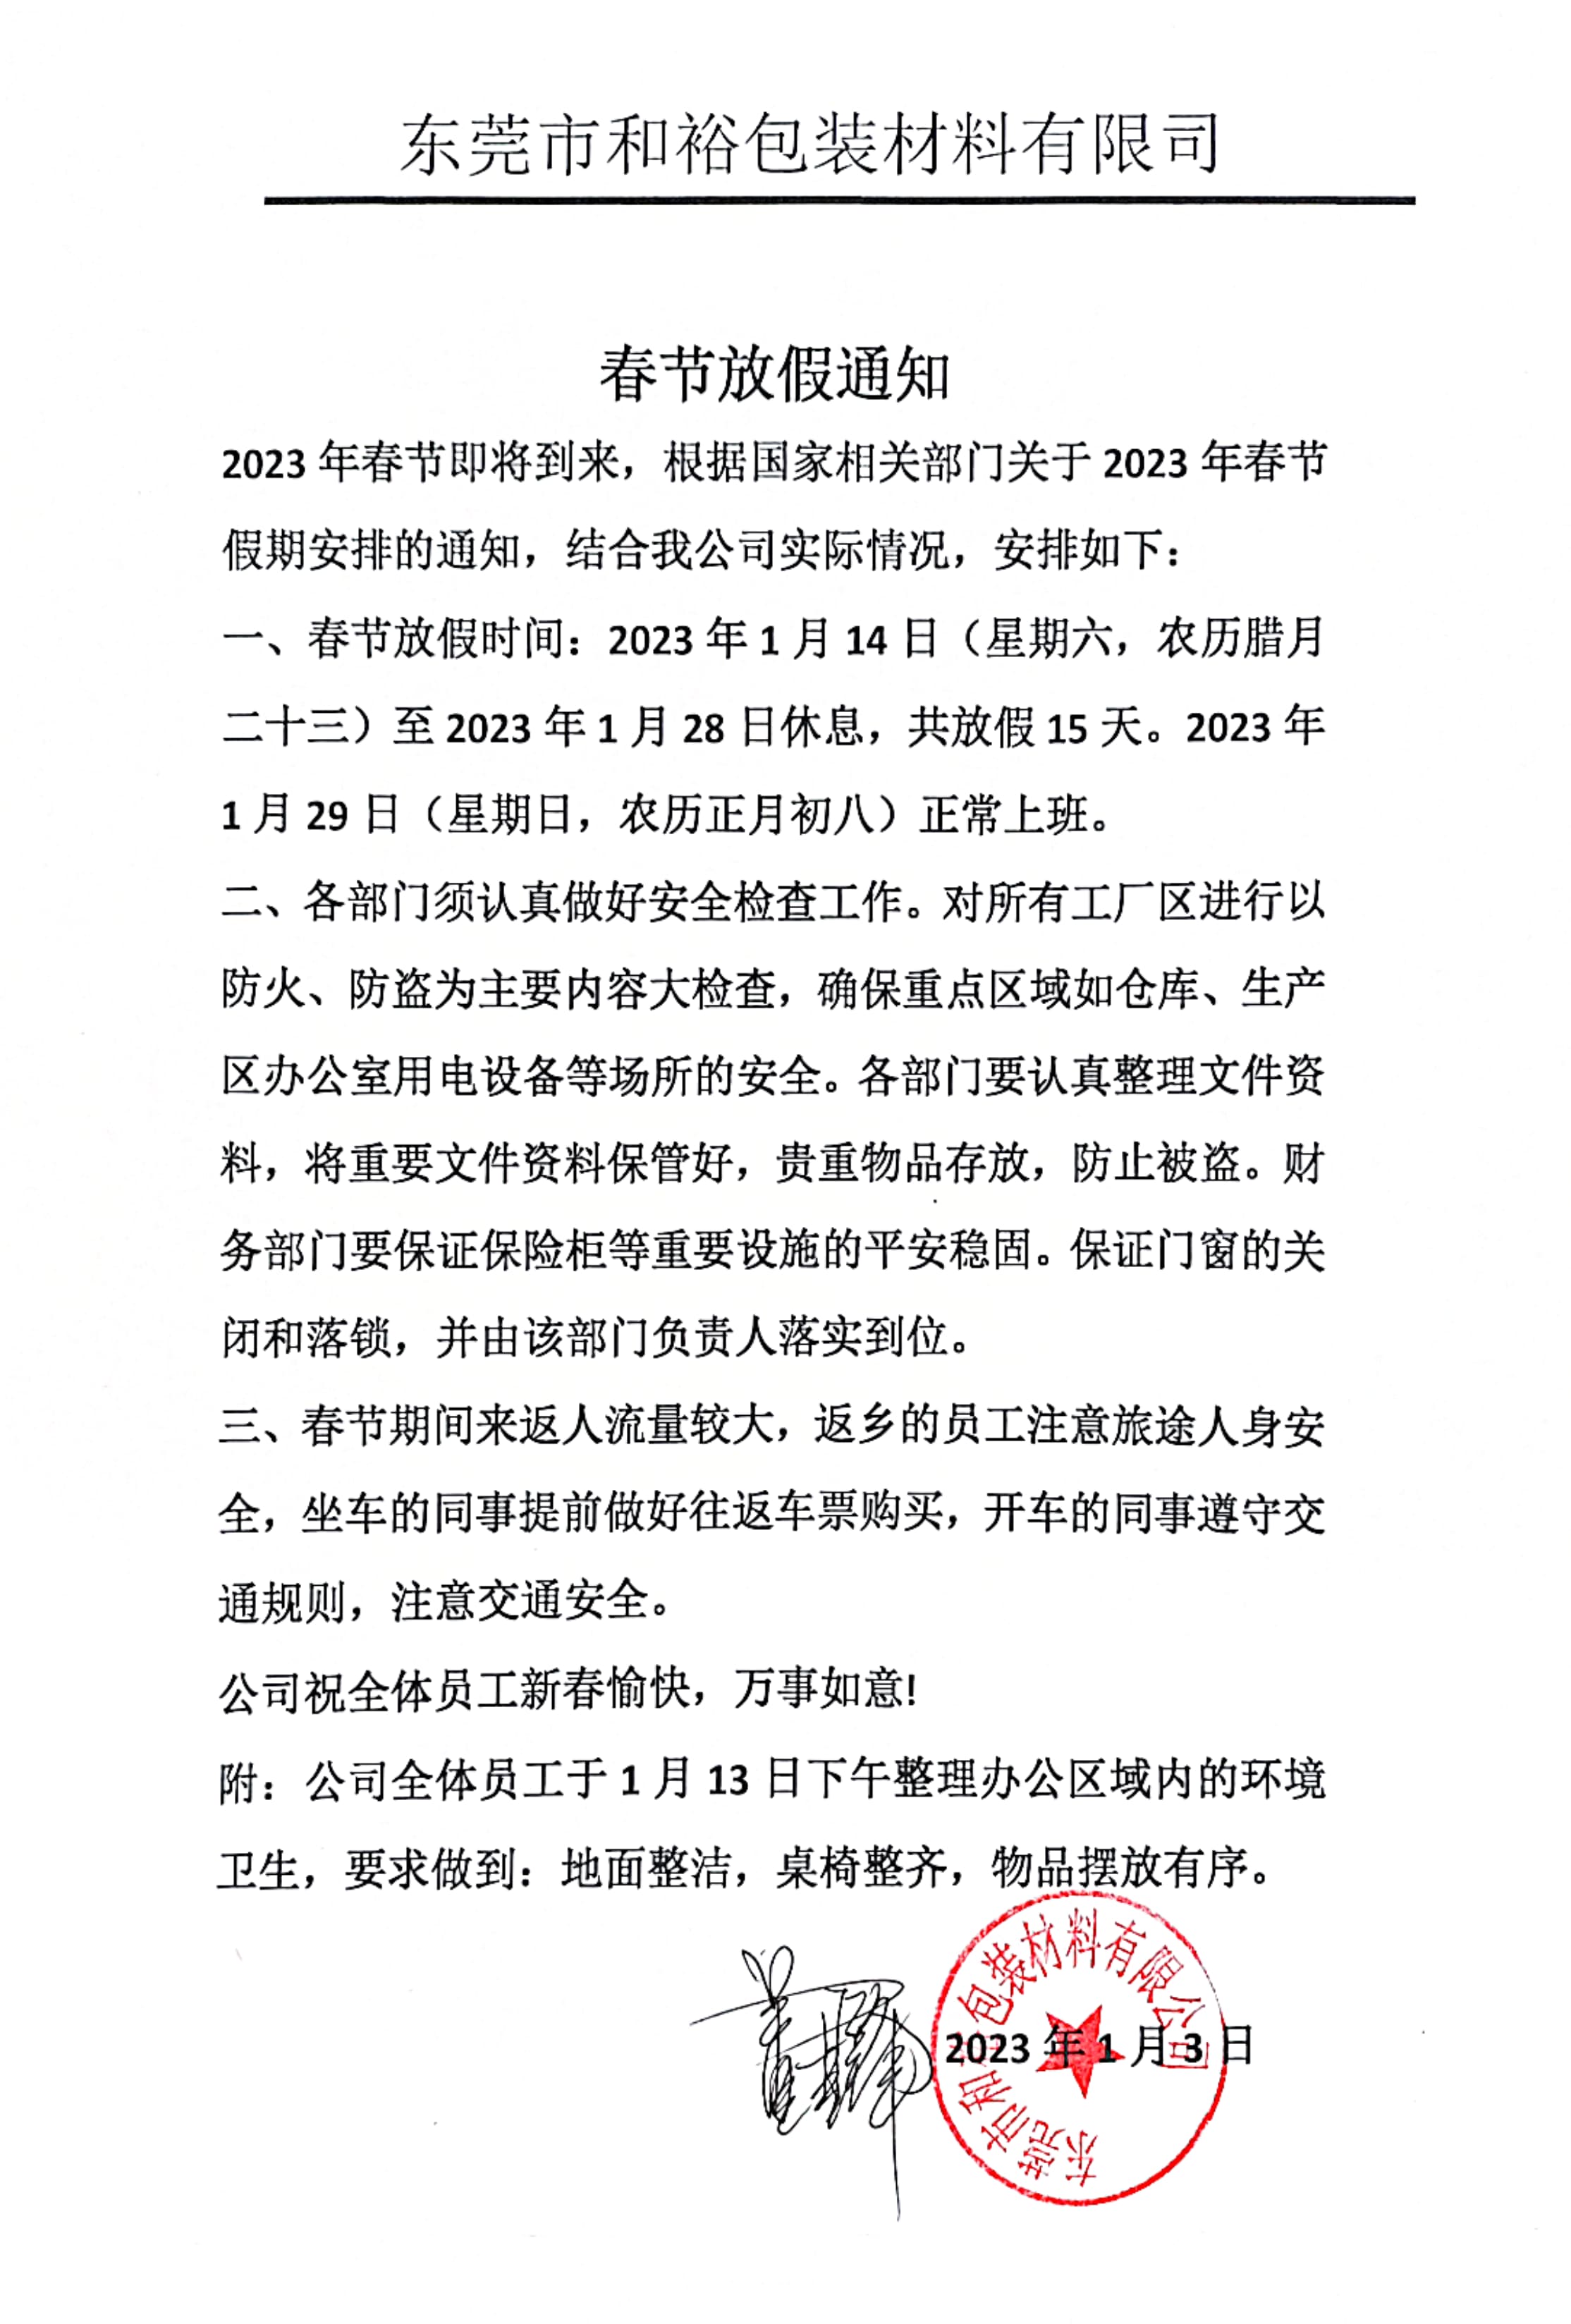 邯郸市2023年和裕包装春节放假通知